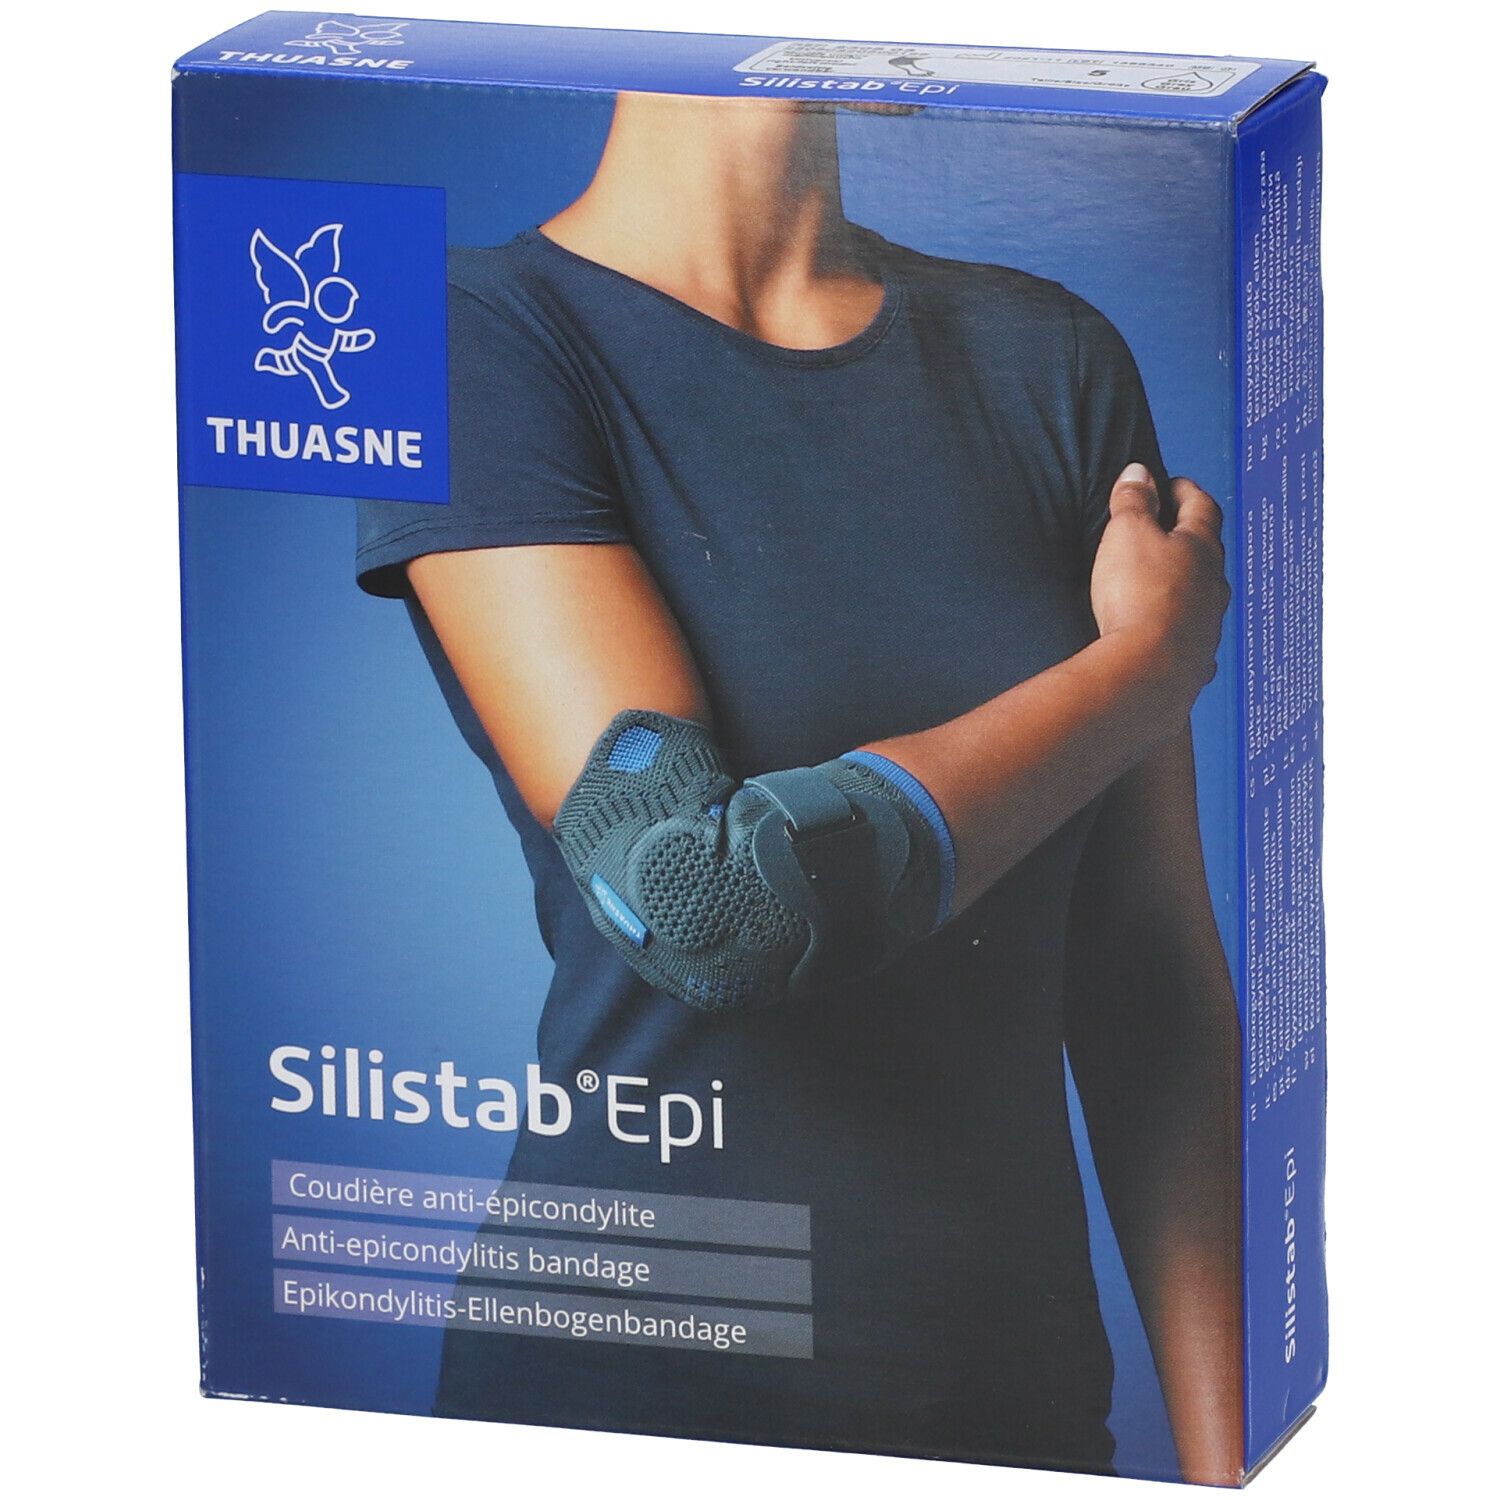 Thuasne Silistab® Epi Coudière anti-épicondylite T5